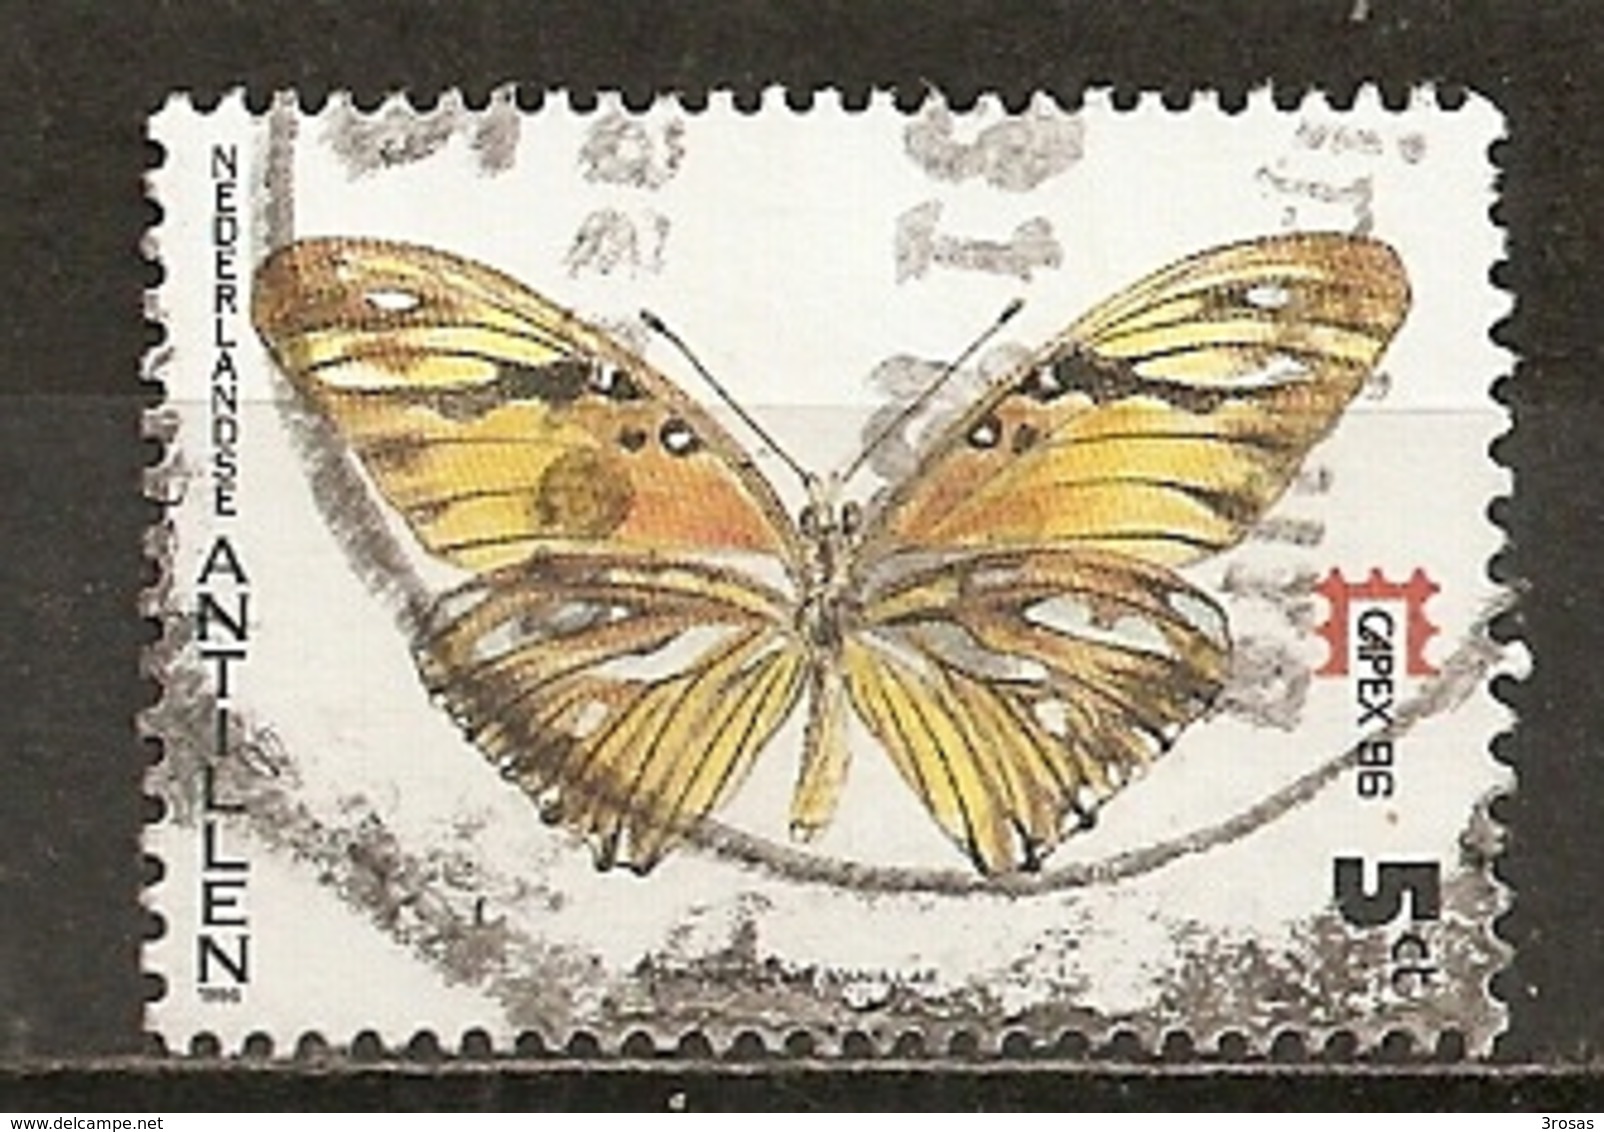 Antilles Neerlandaise Netherlands Antilles 1986 Papillon Butterfly Obl - Niederländische Antillen, Curaçao, Aruba